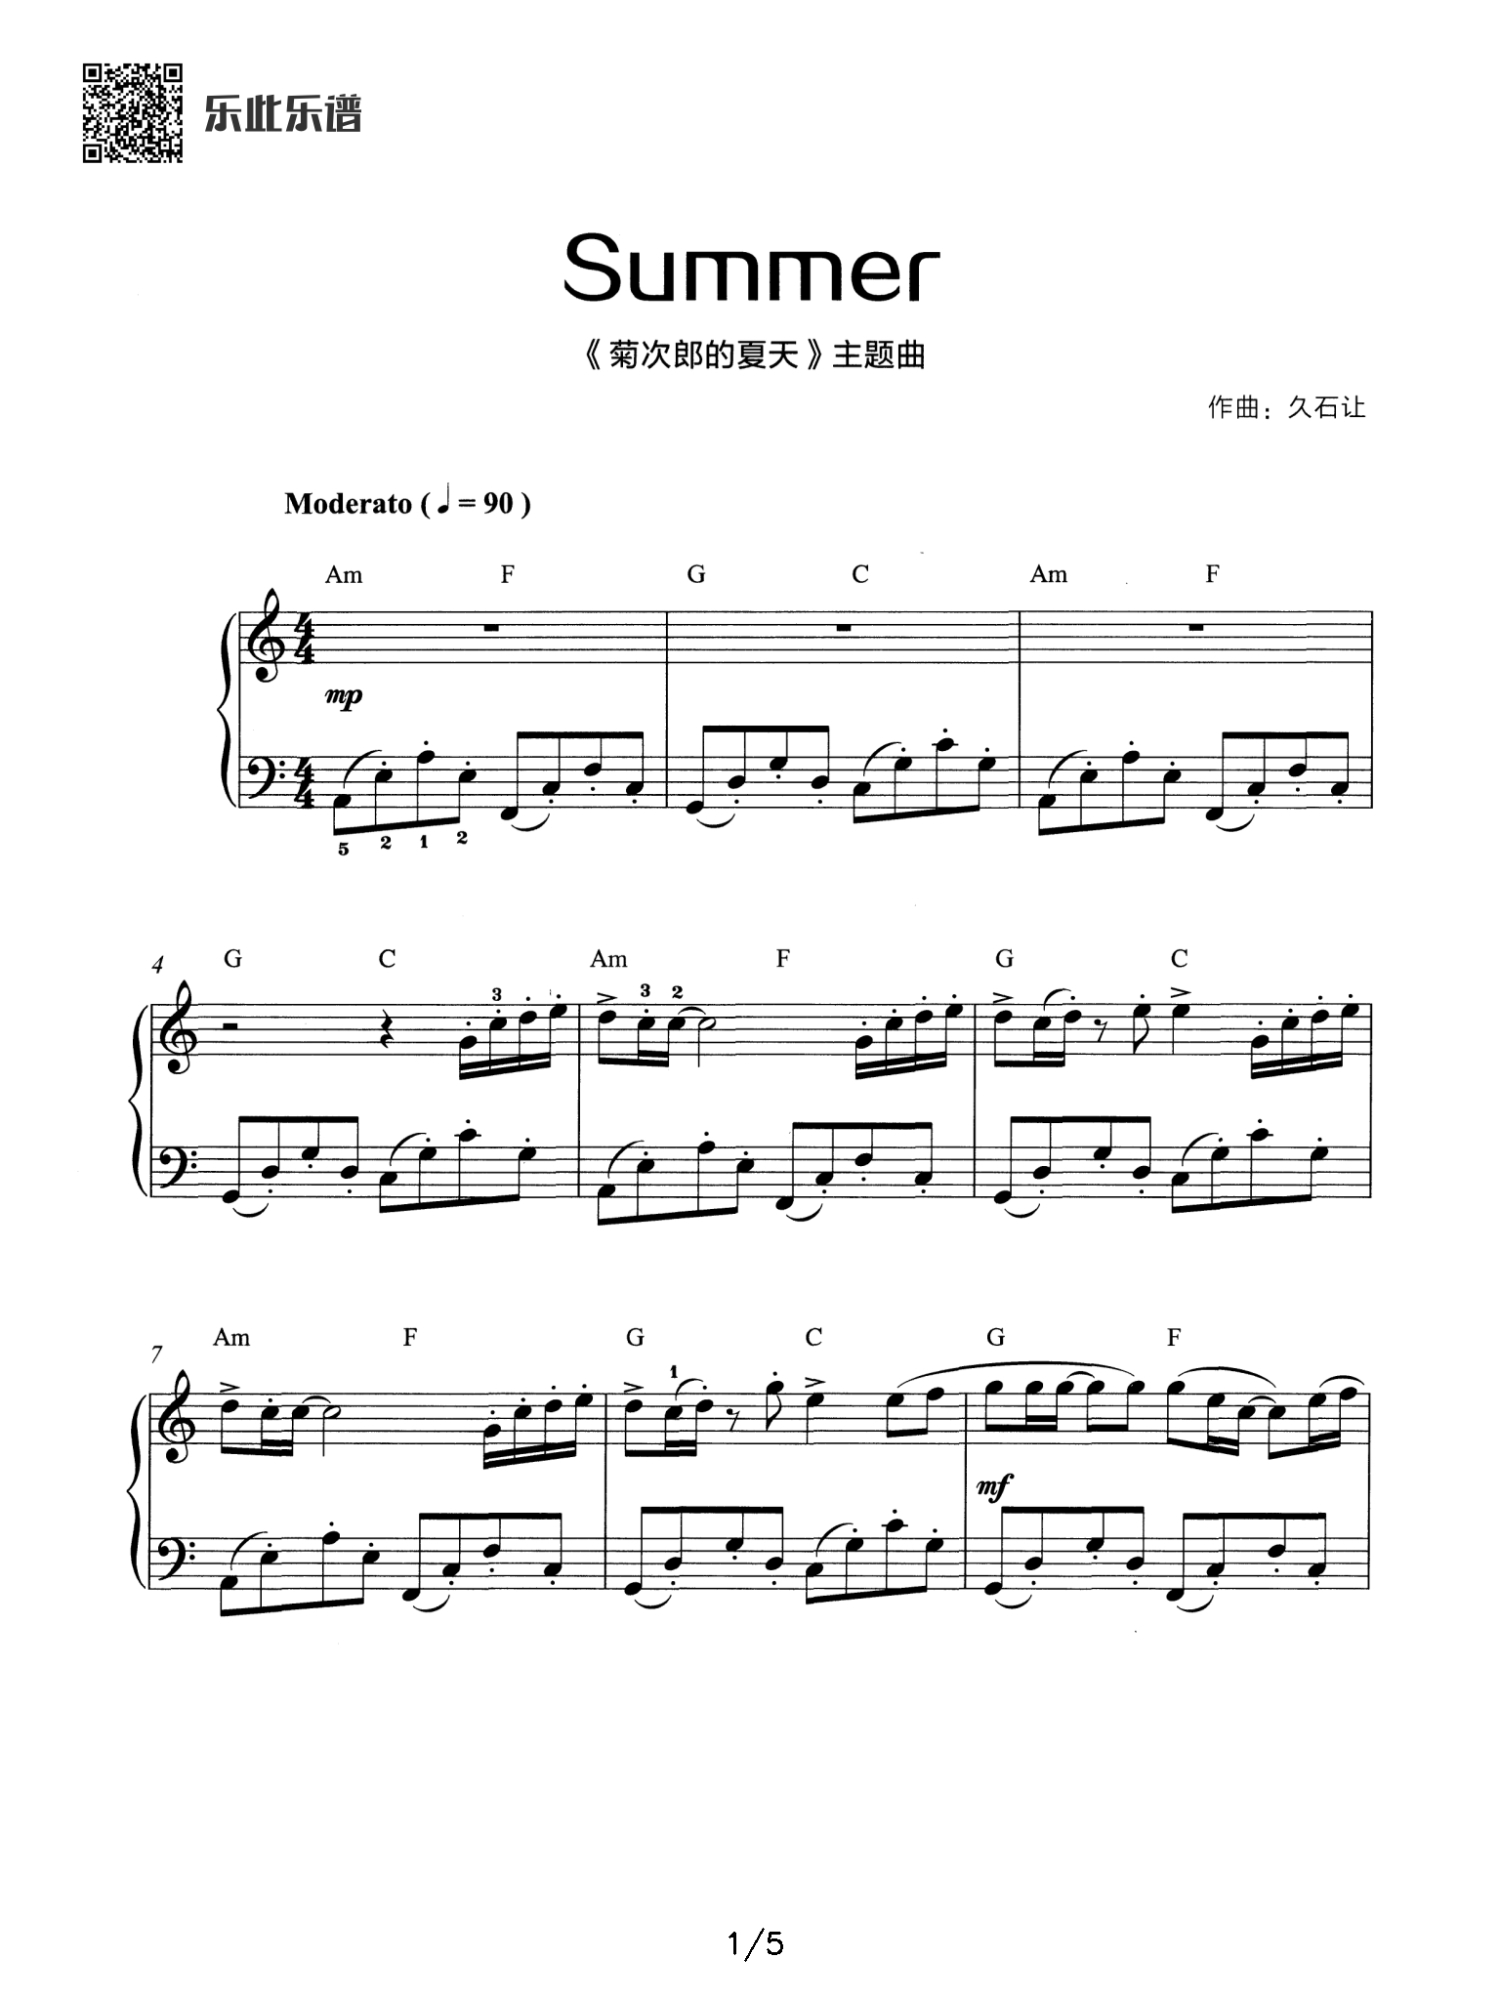 久石让《菊次郎的夏天》钢琴谱 Sunmer钢琴谱第1张